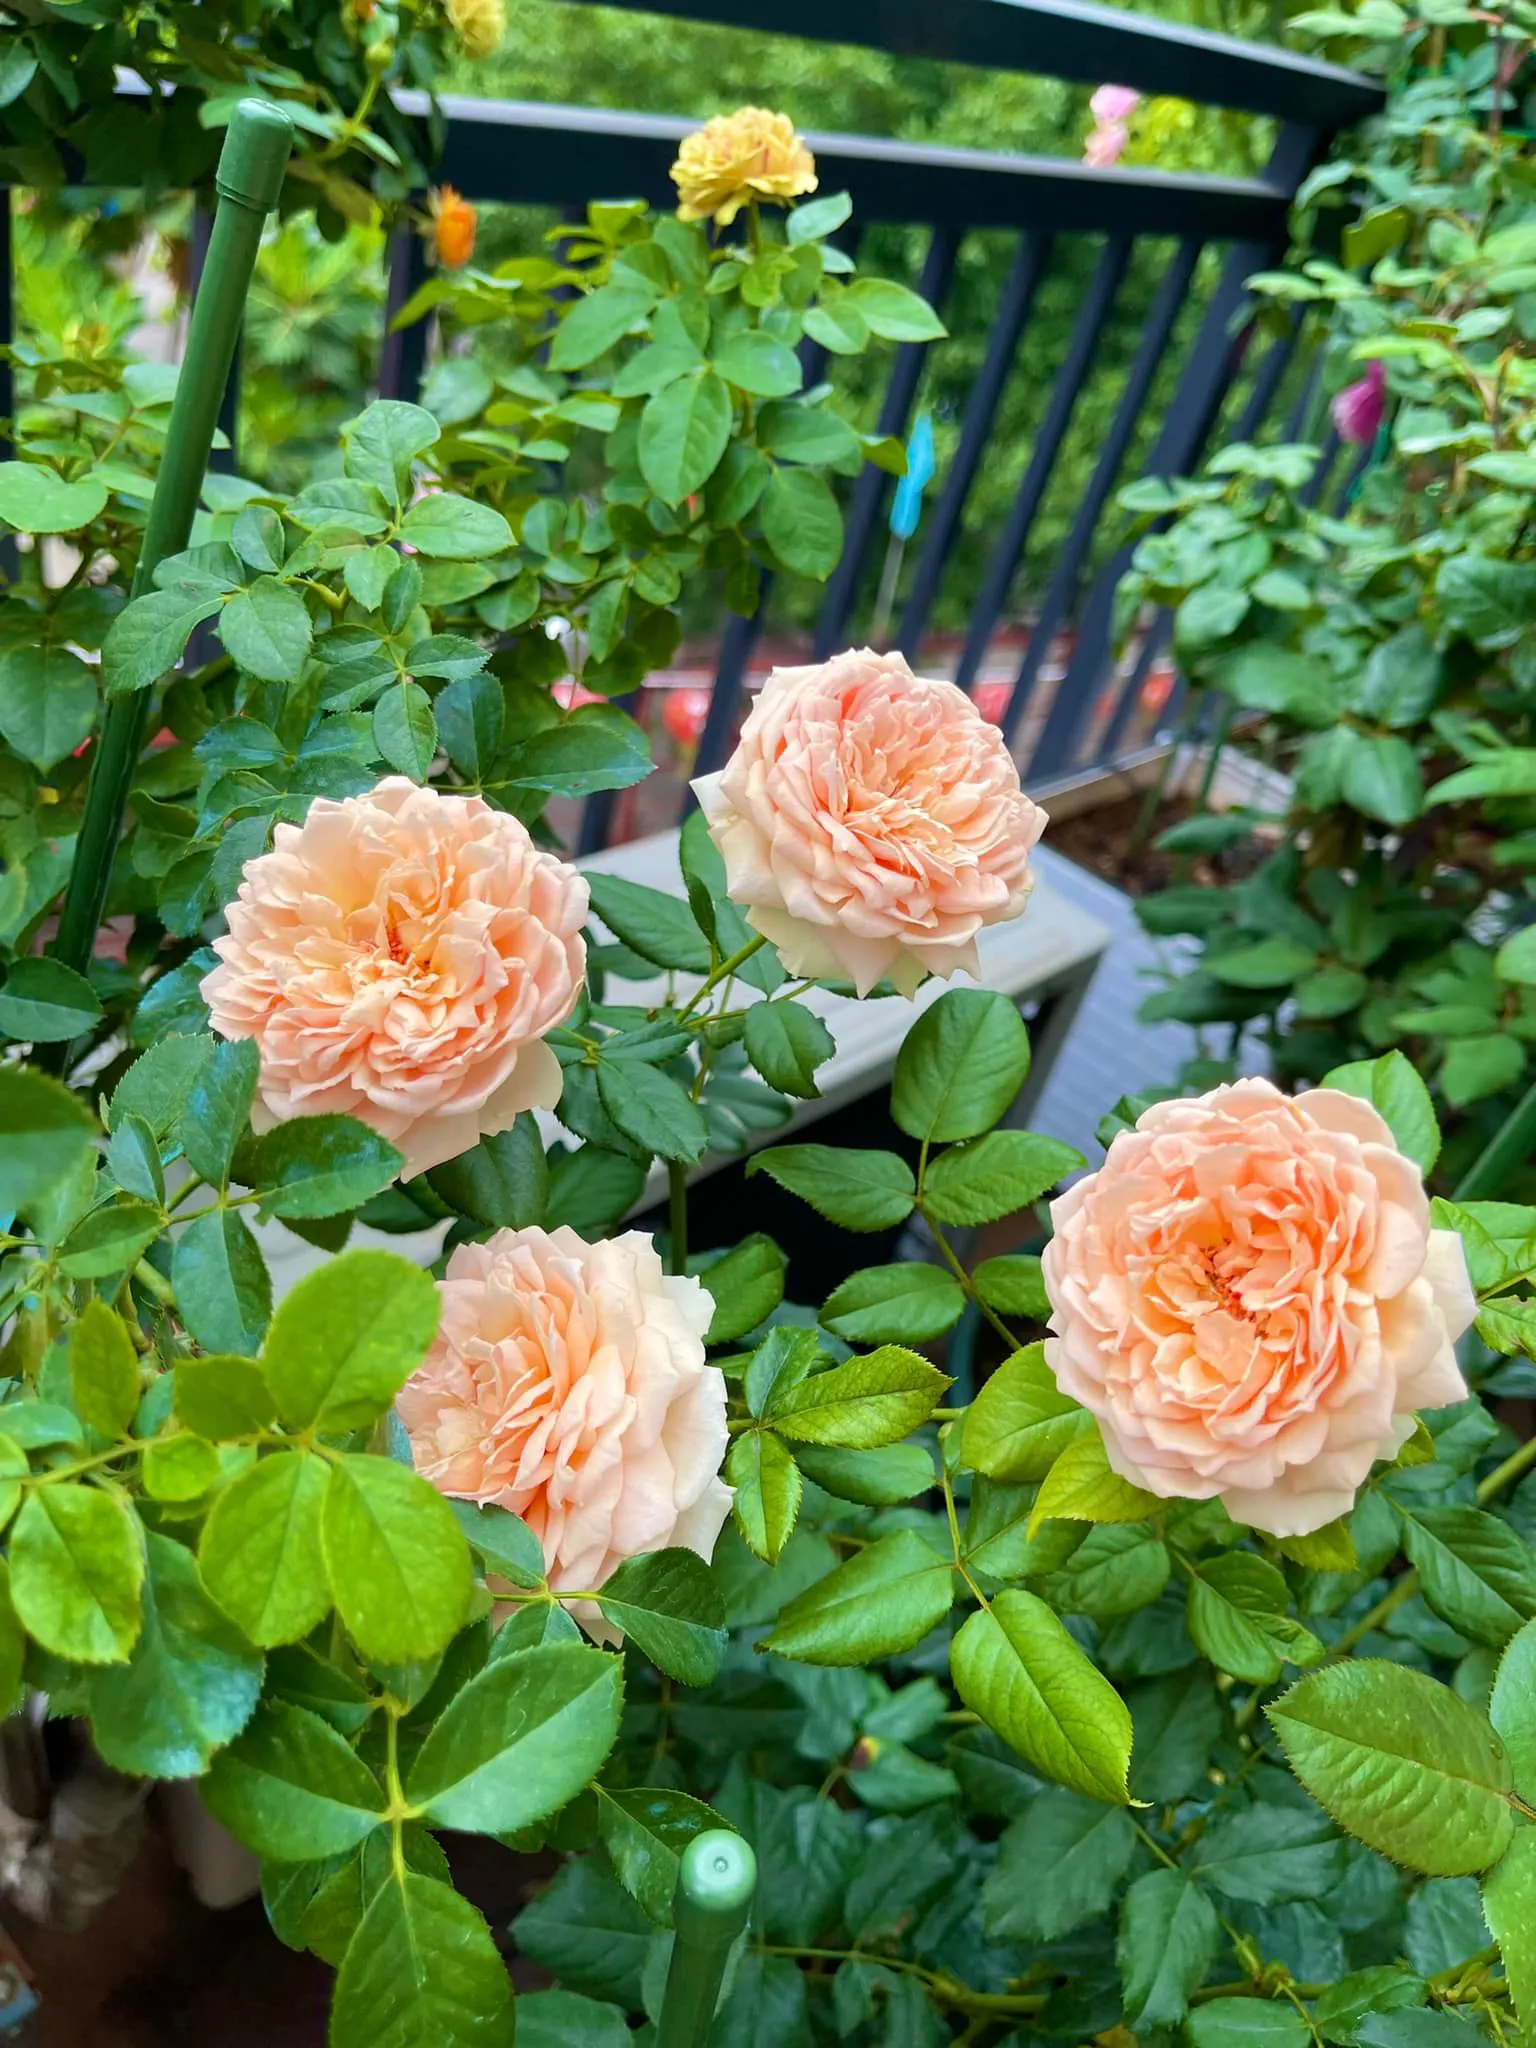 Vườn hoa hồng ngoại đẹp ngây ngất trên sân thượng giữa Sài thành của trai đẹp Sài Gòn - Ảnh 10.